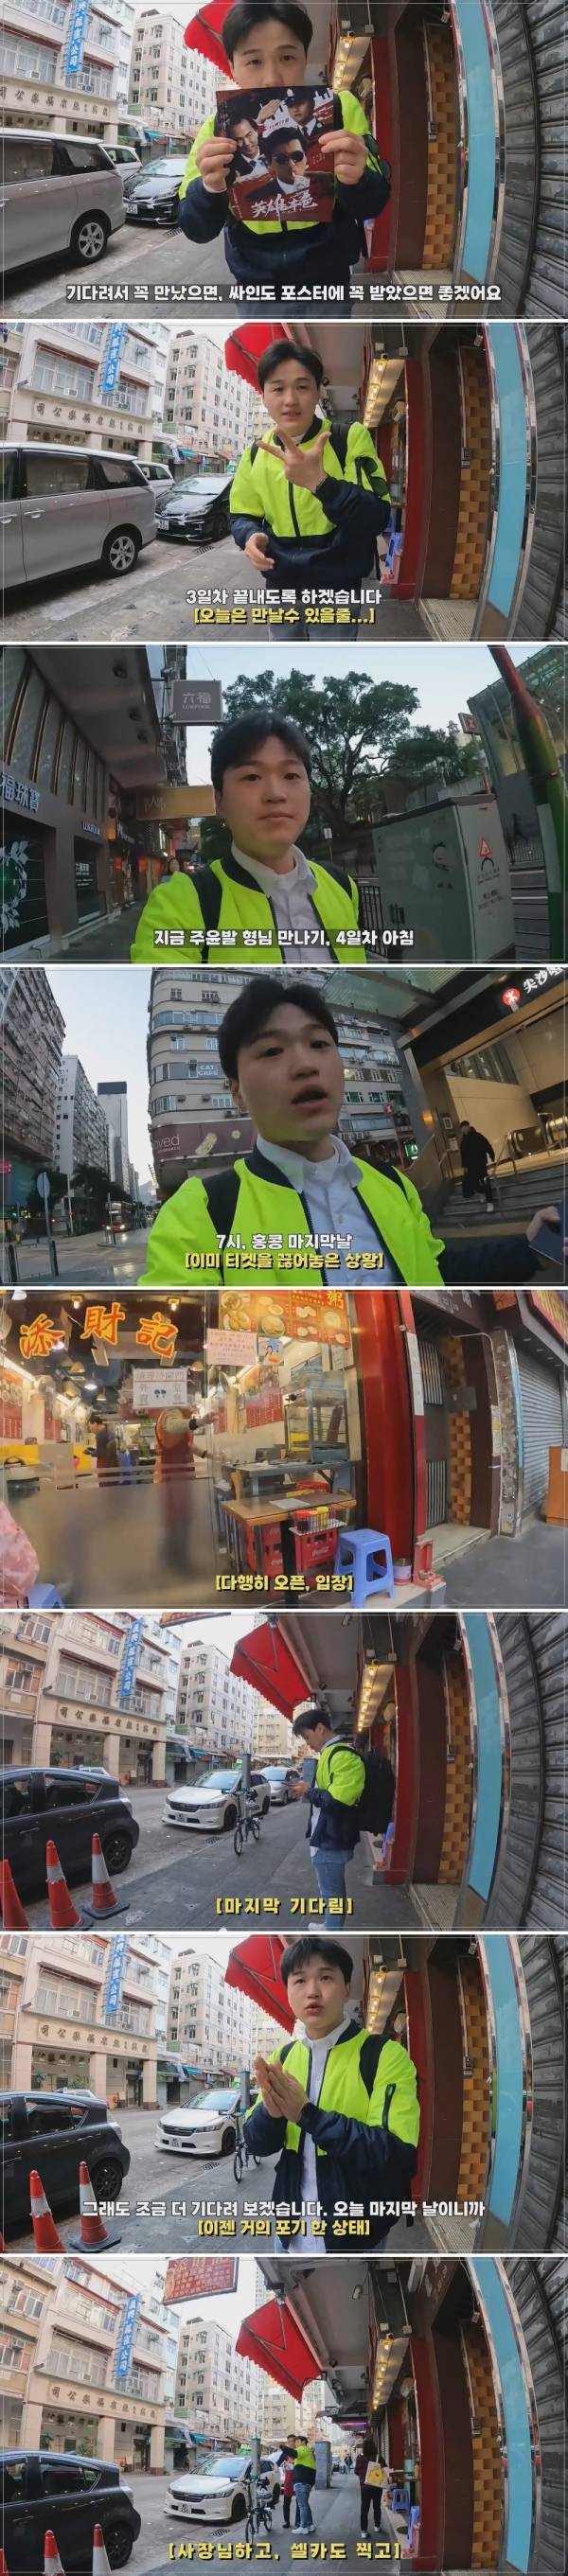 홍콩에서, 4일 기다려서 주윤발 만난 사람